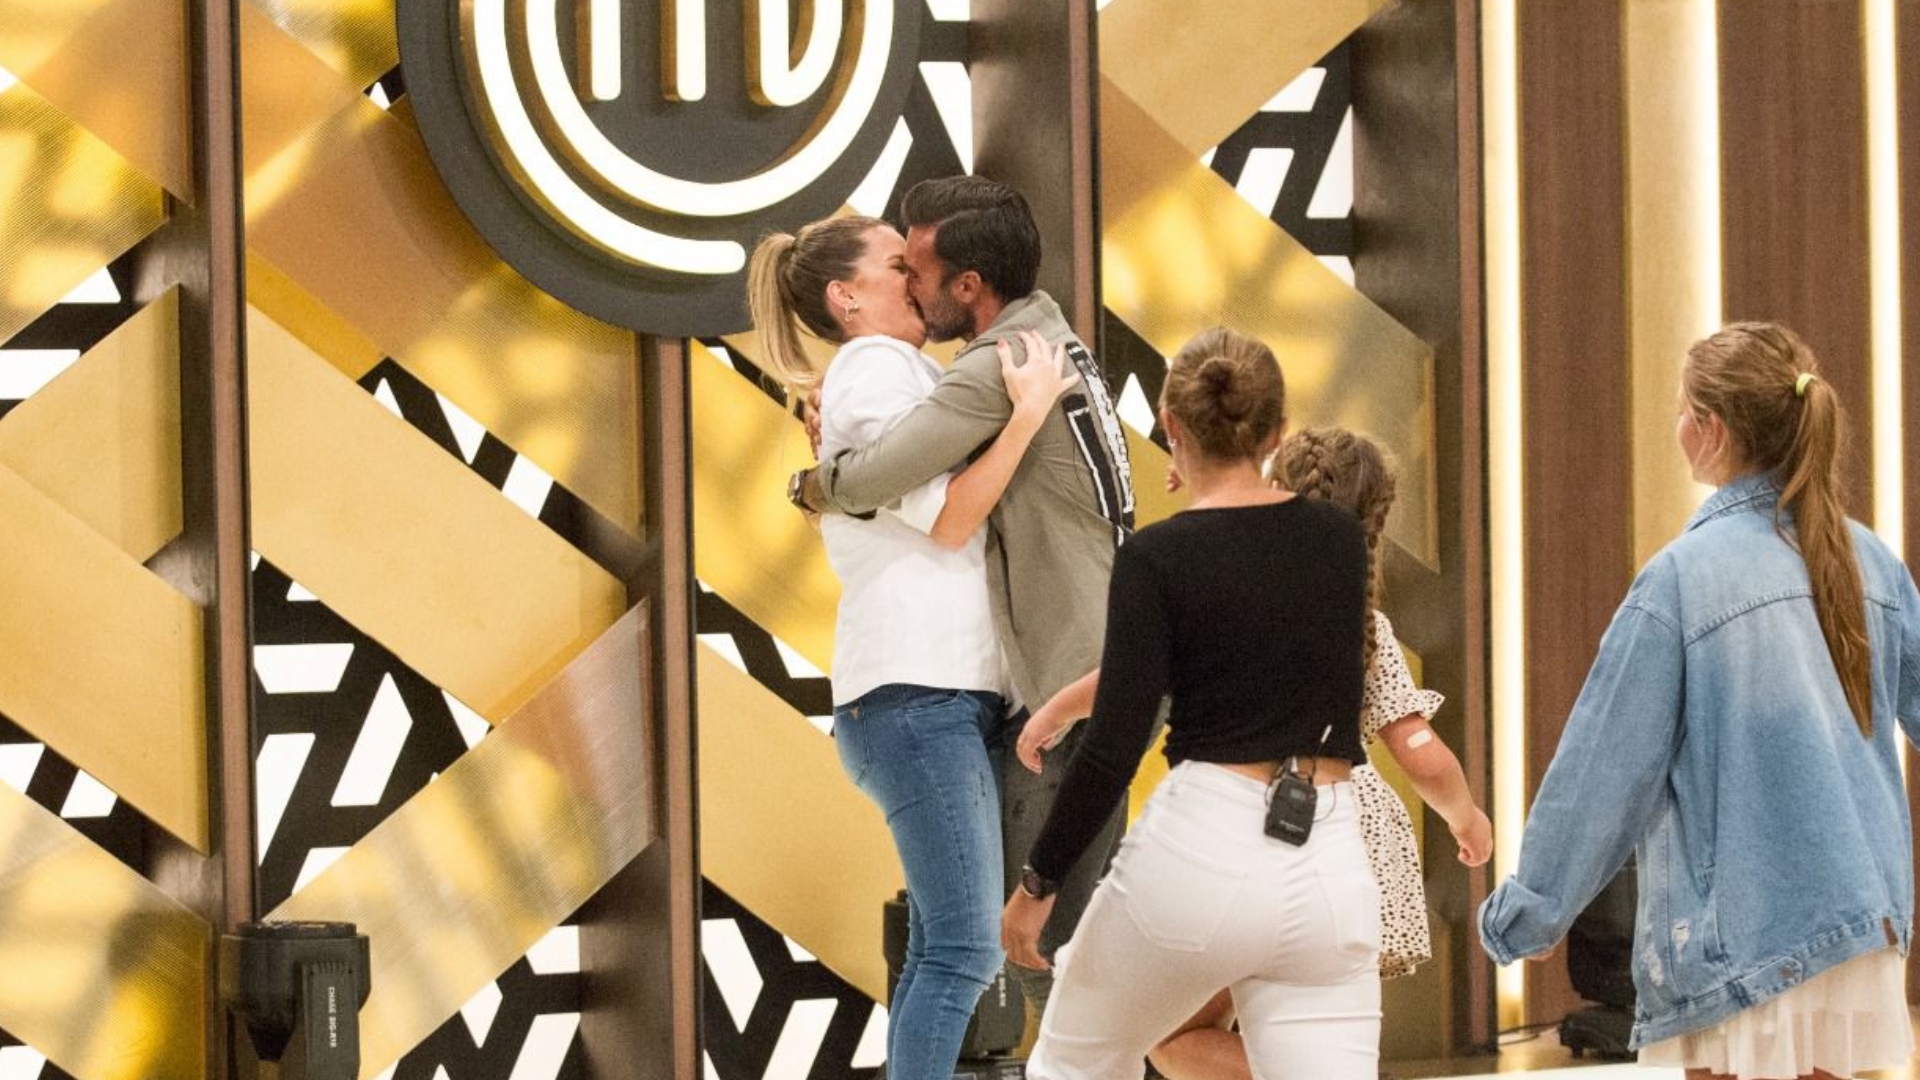 Mica Viciconte recibió besos y abrazos de parte de Fabián Cubero y también de sus hijastras Indiana, Allegra y Sienna tras consagrarse campeona de Masterchef Celebrity 3